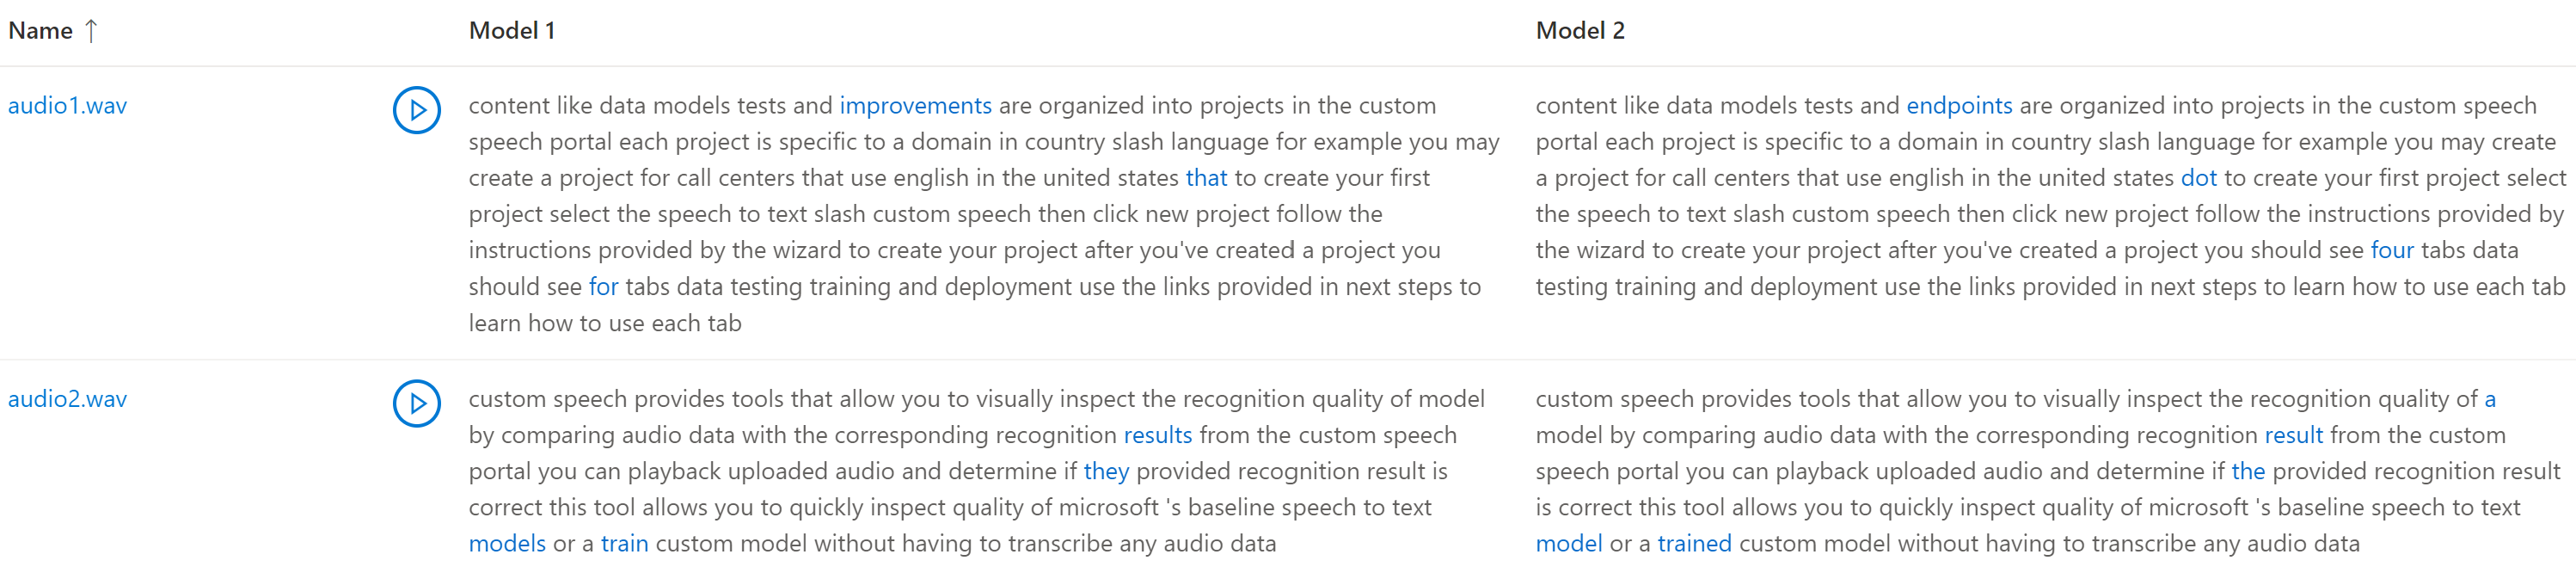 Cuplikan layar perbandingan transkripsi berdasarkan dua model